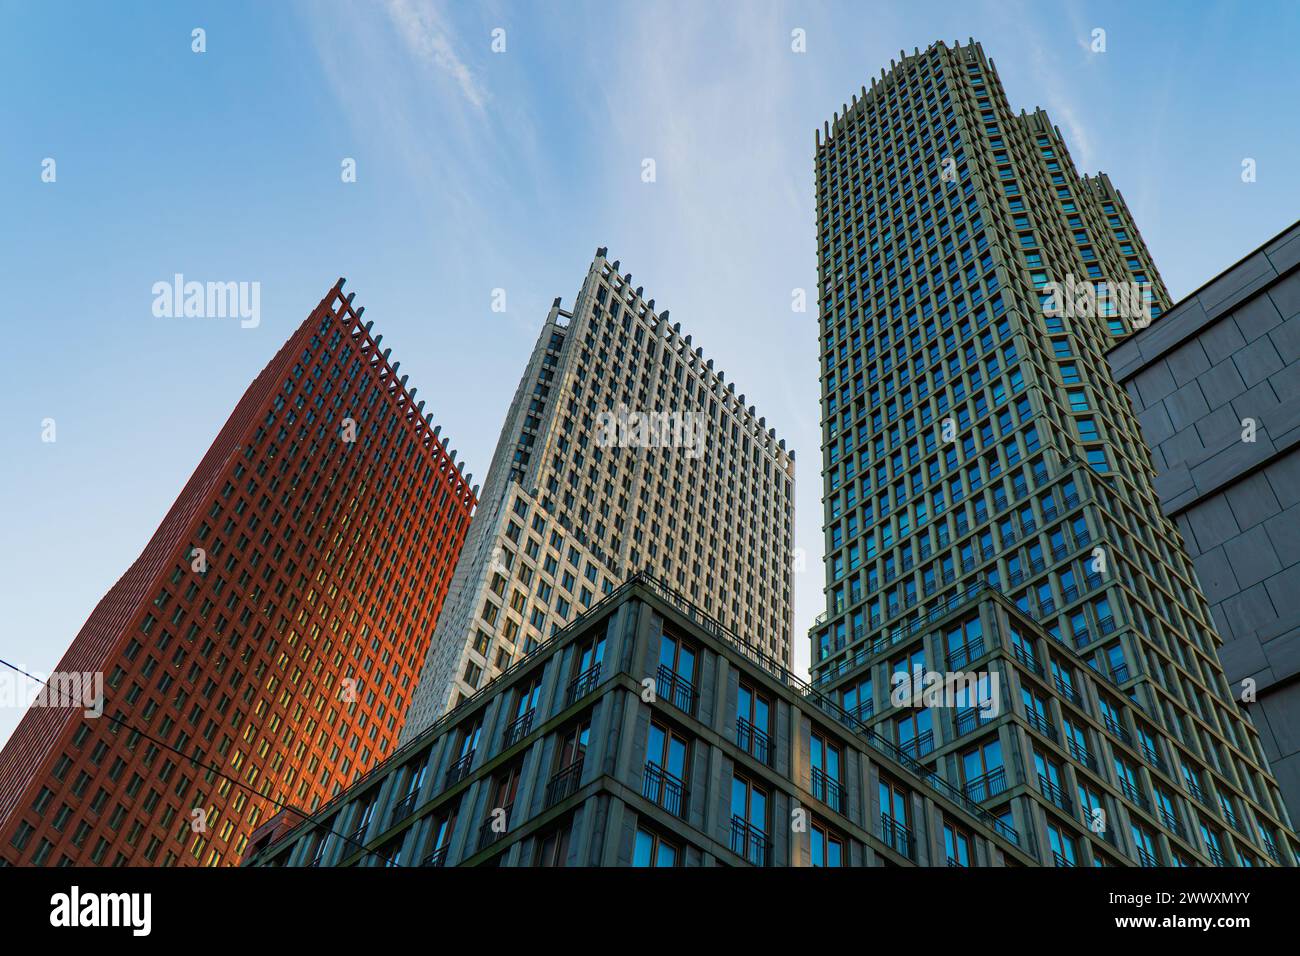 Vista verticale dei grattacieli nel quartiere centrale dell'Aia, Paesi Bassi. Luce mattutina, cielo blu con nuvole sottili. Edifici moderni e colorati. Foto Stock